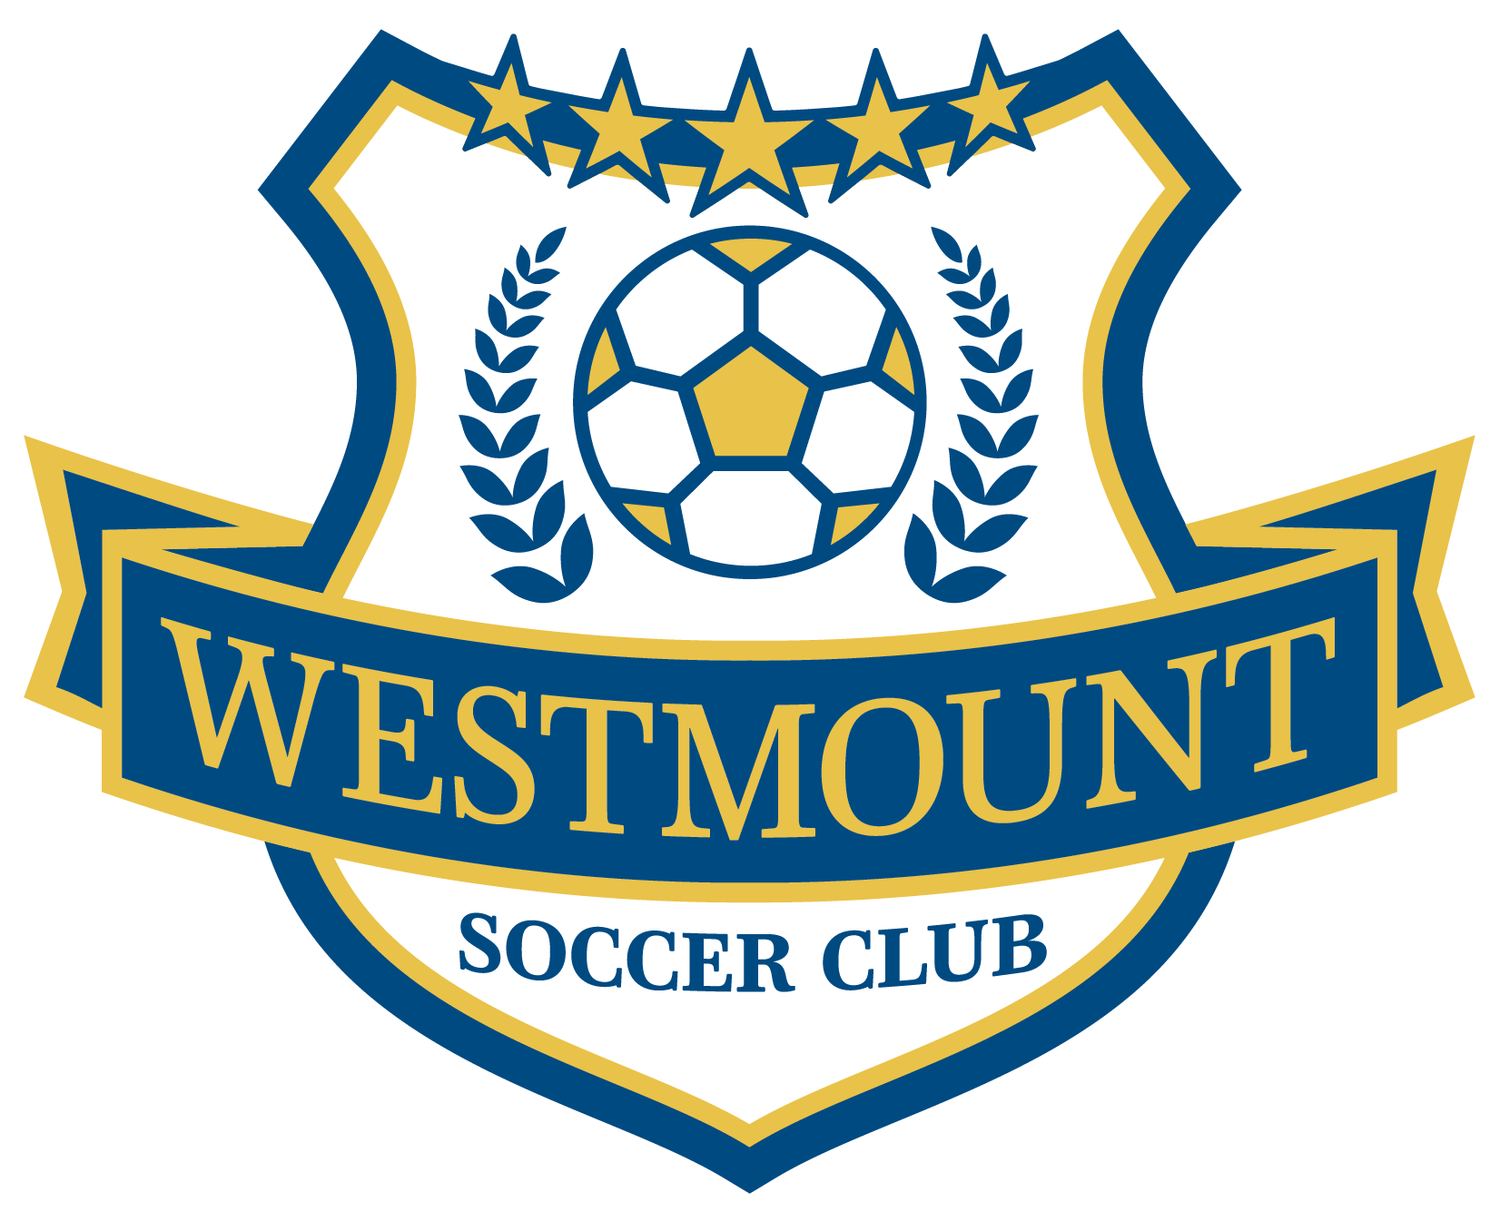 Westmount Soccer Club